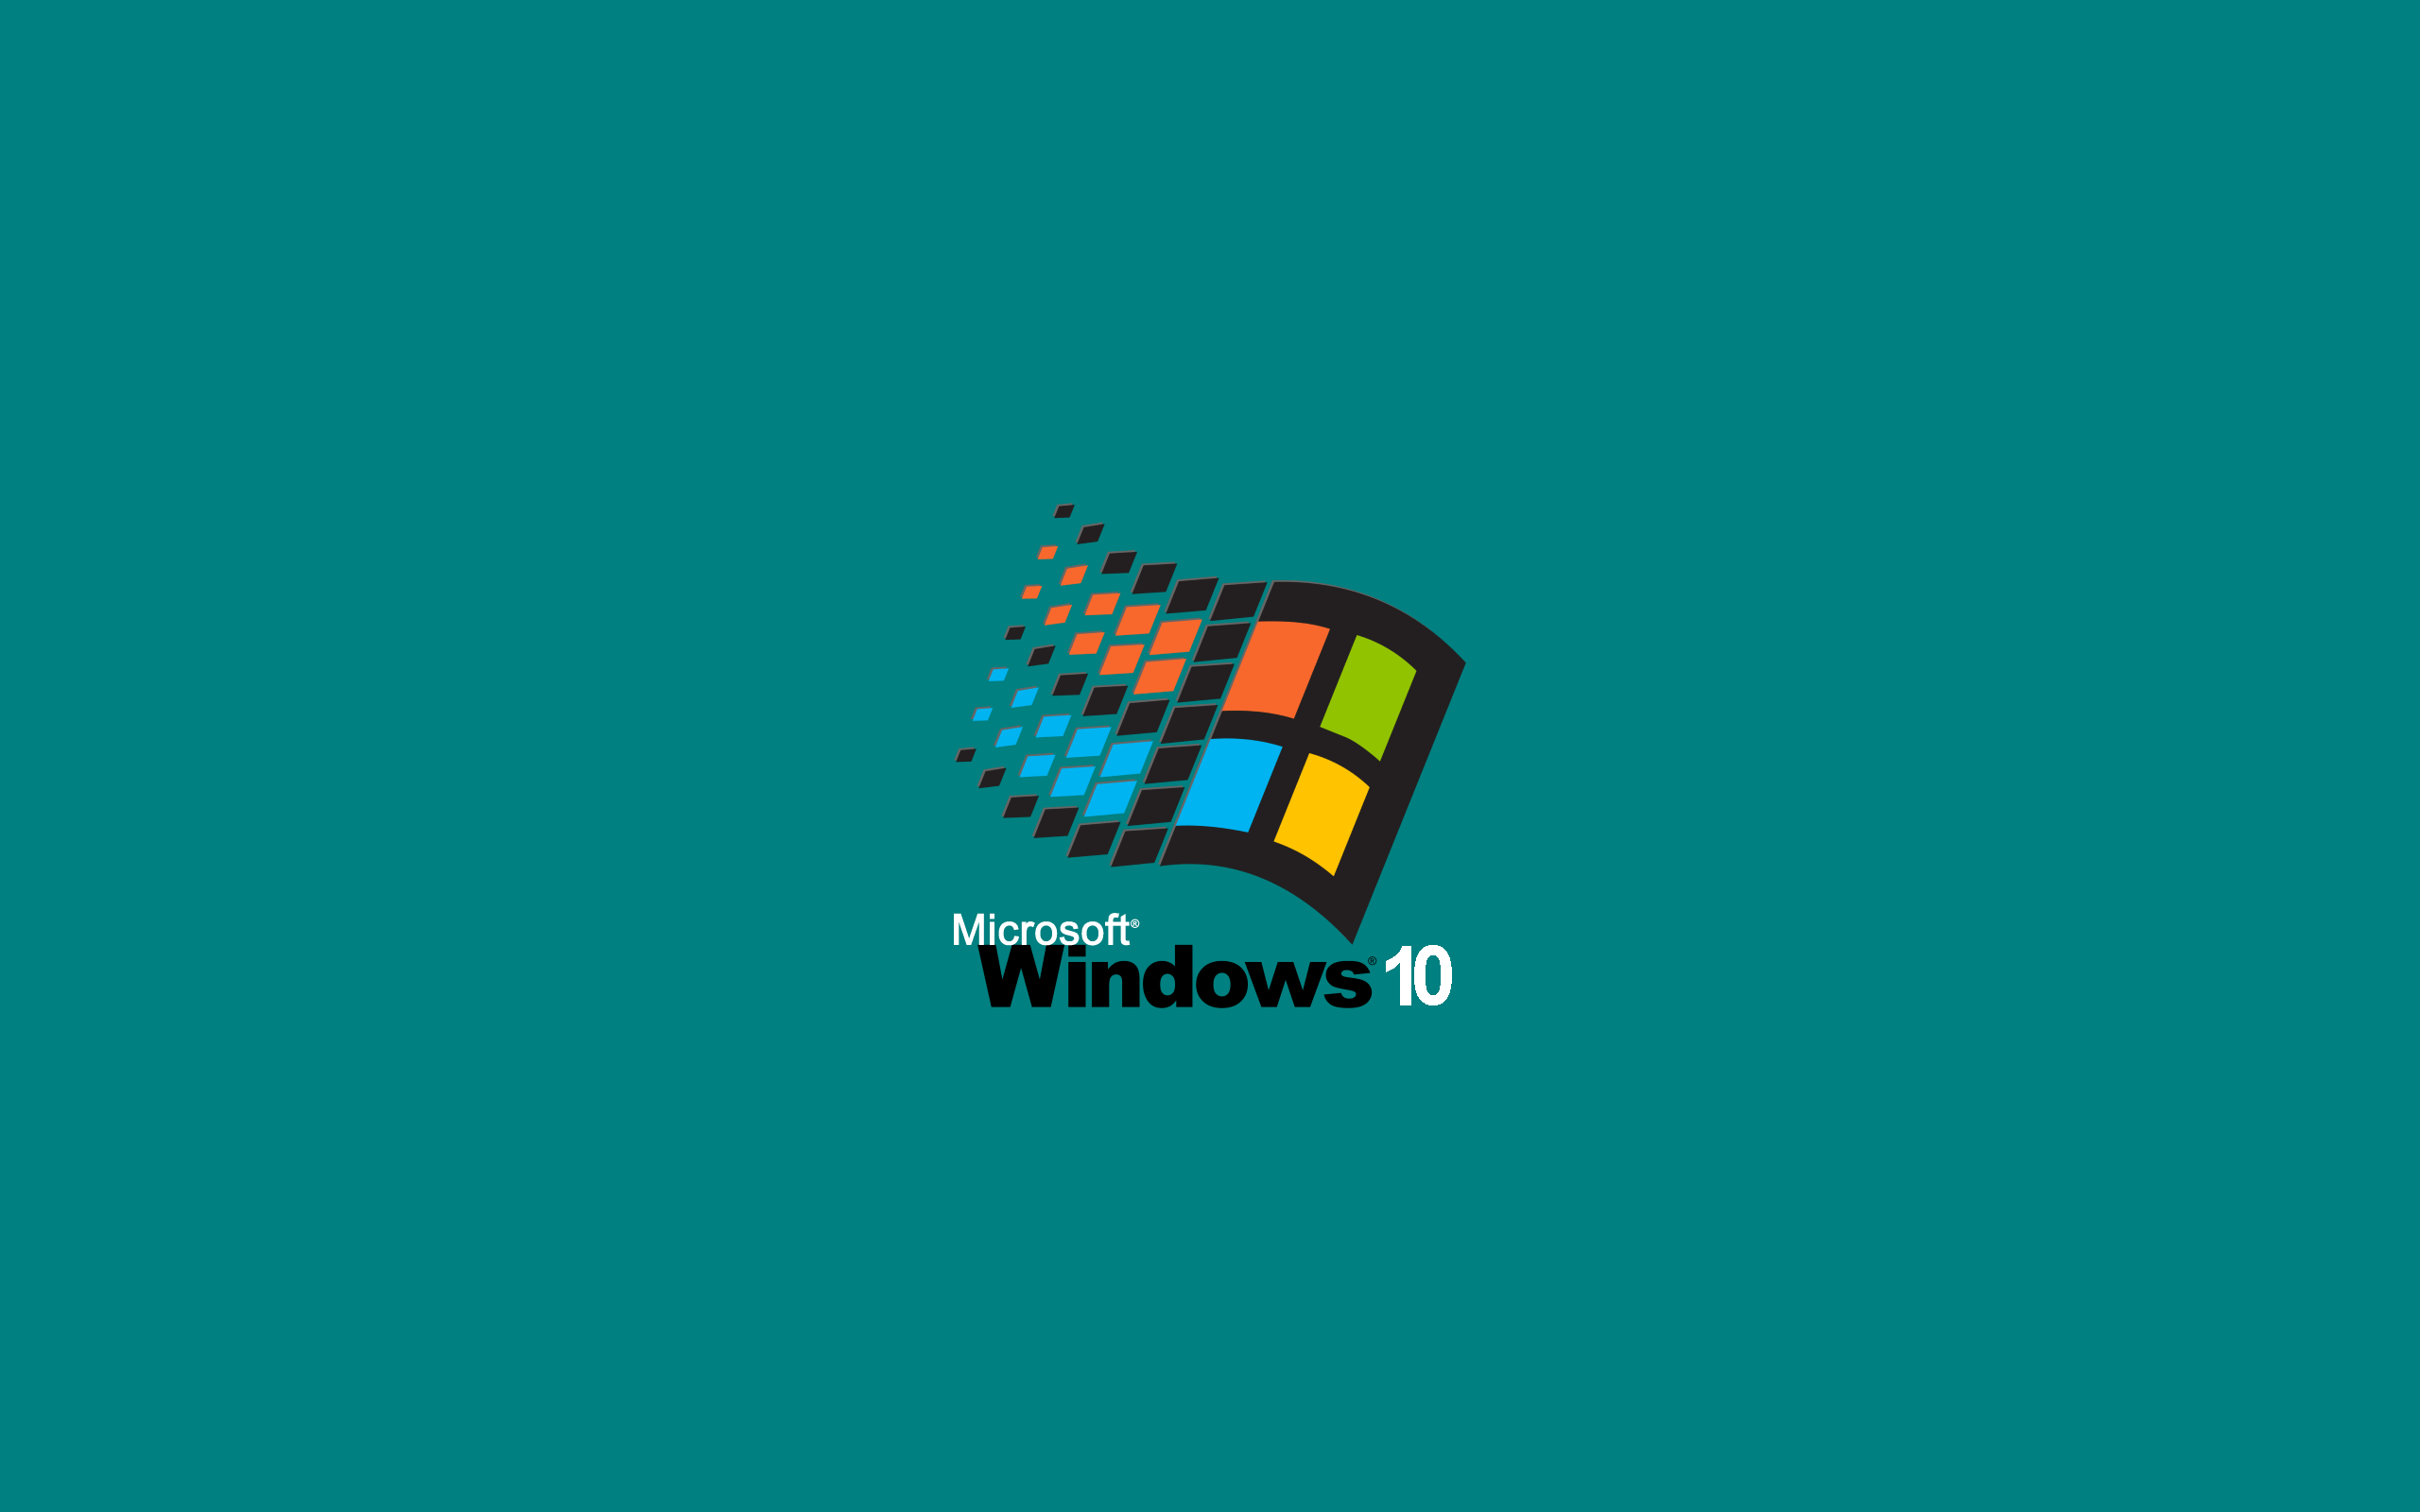 Bạn là một fan trung thành của hệ điều hành Windows 95? Xin chào đón đến với hình ảnh quen thuộc về Windows 95 desktop. Bạn sẽ thấy một loạt hình ảnh đẹp, tràn đầy đầy niềm đam mê với công nghệ.